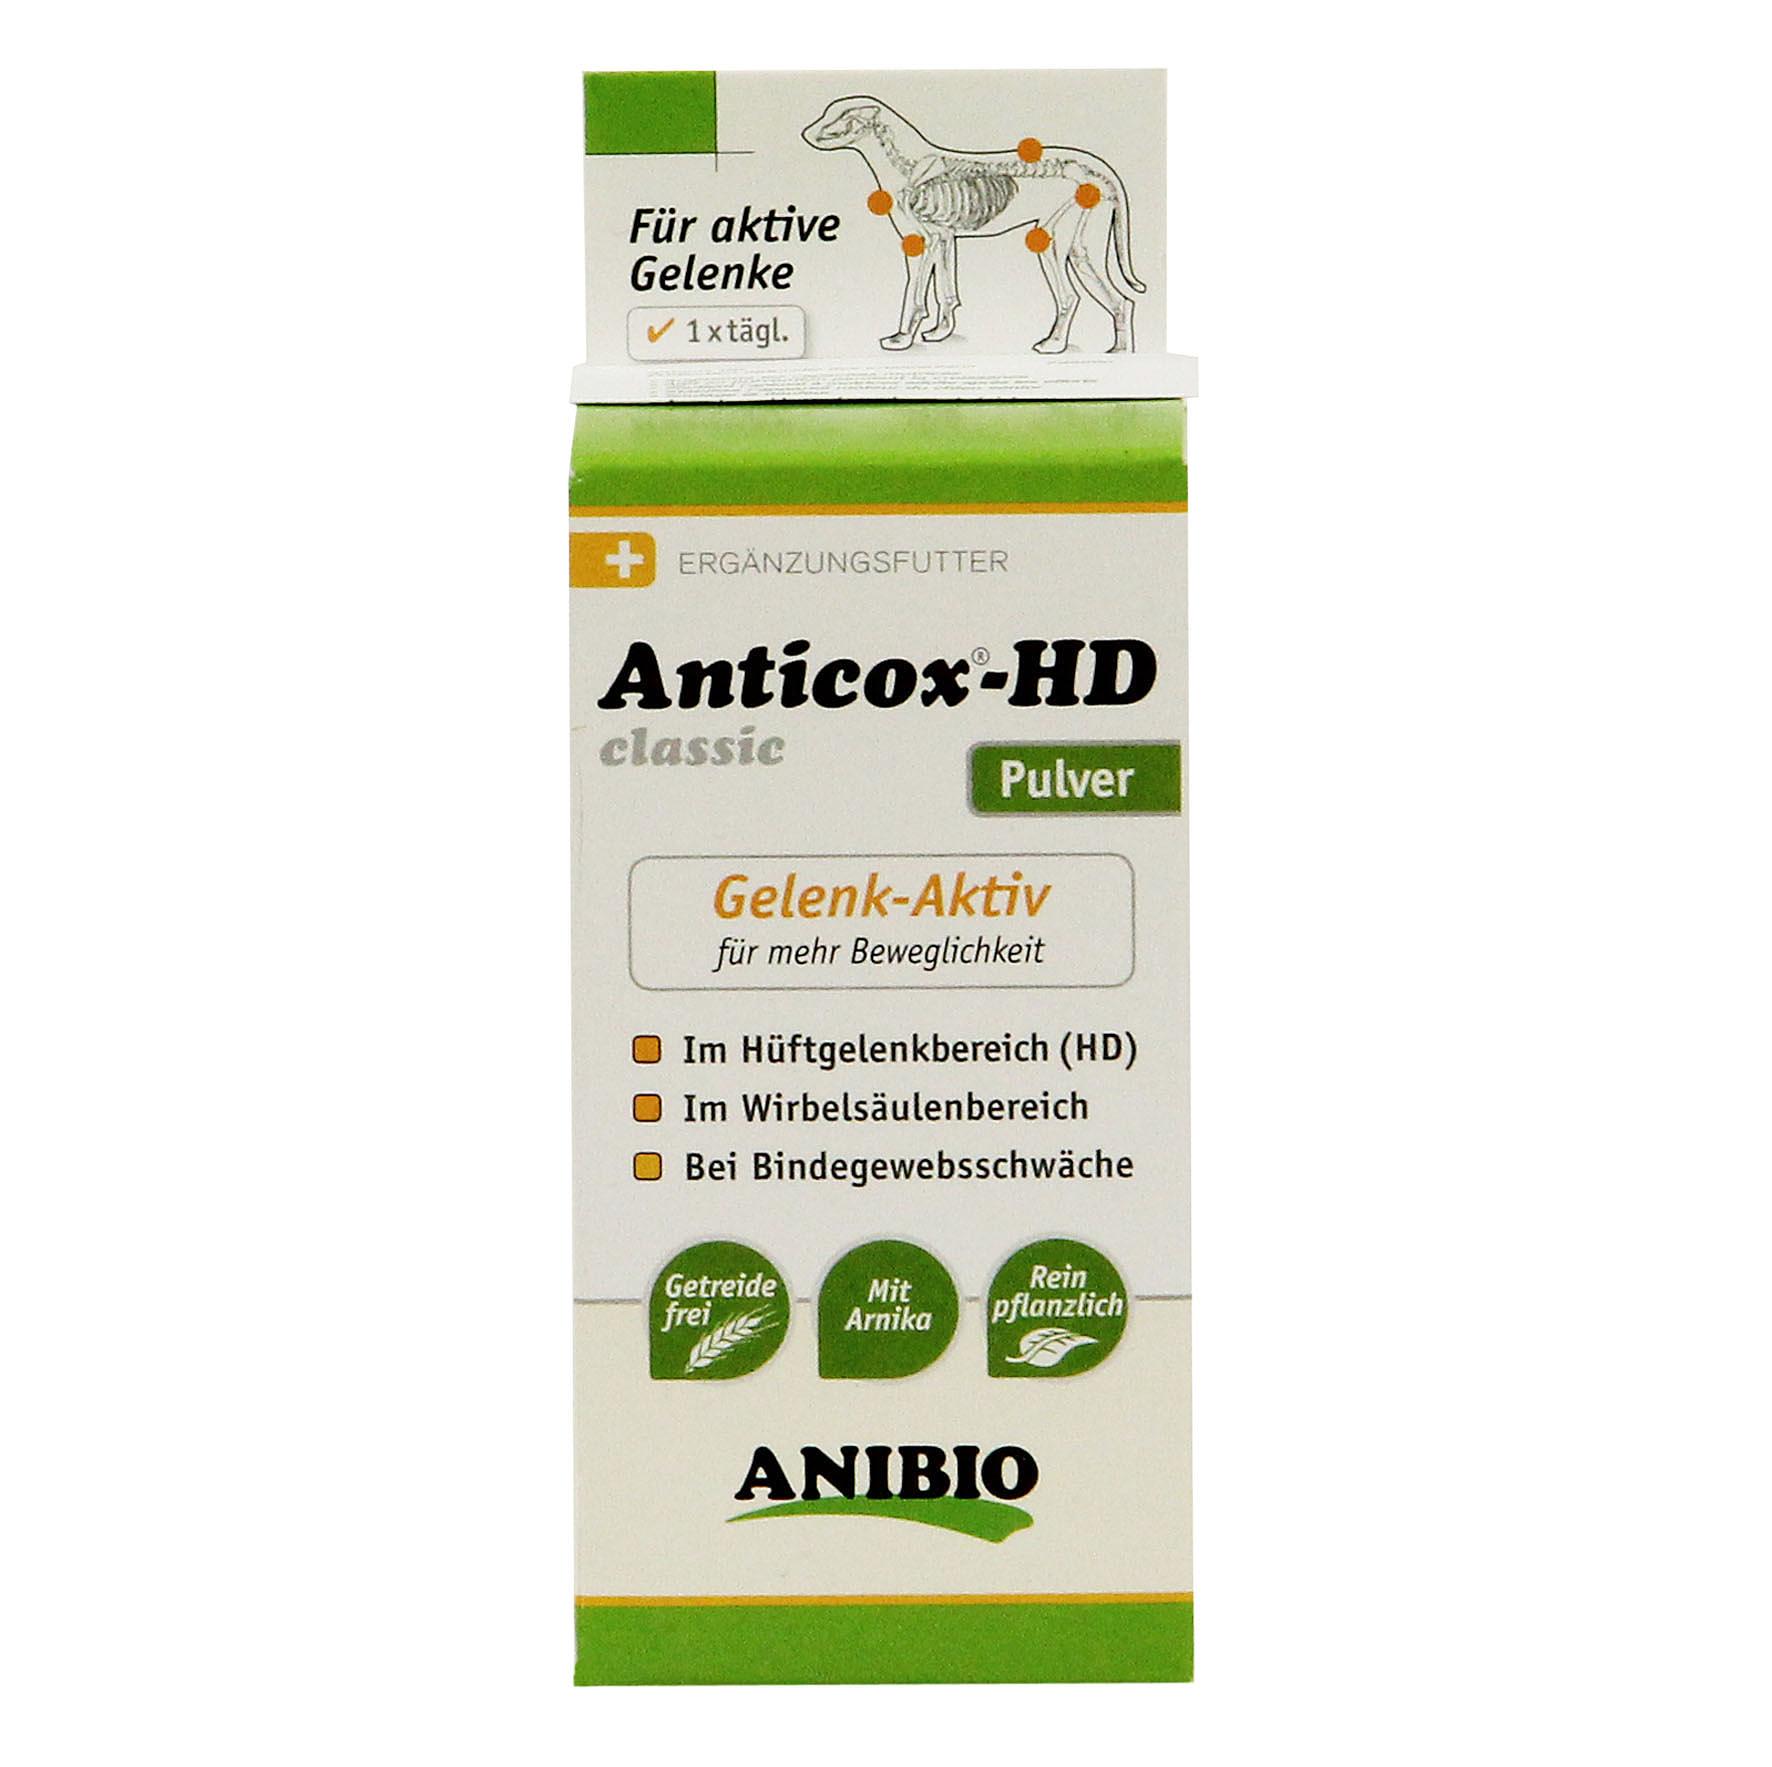 Anibio Anticox-HD classic-P